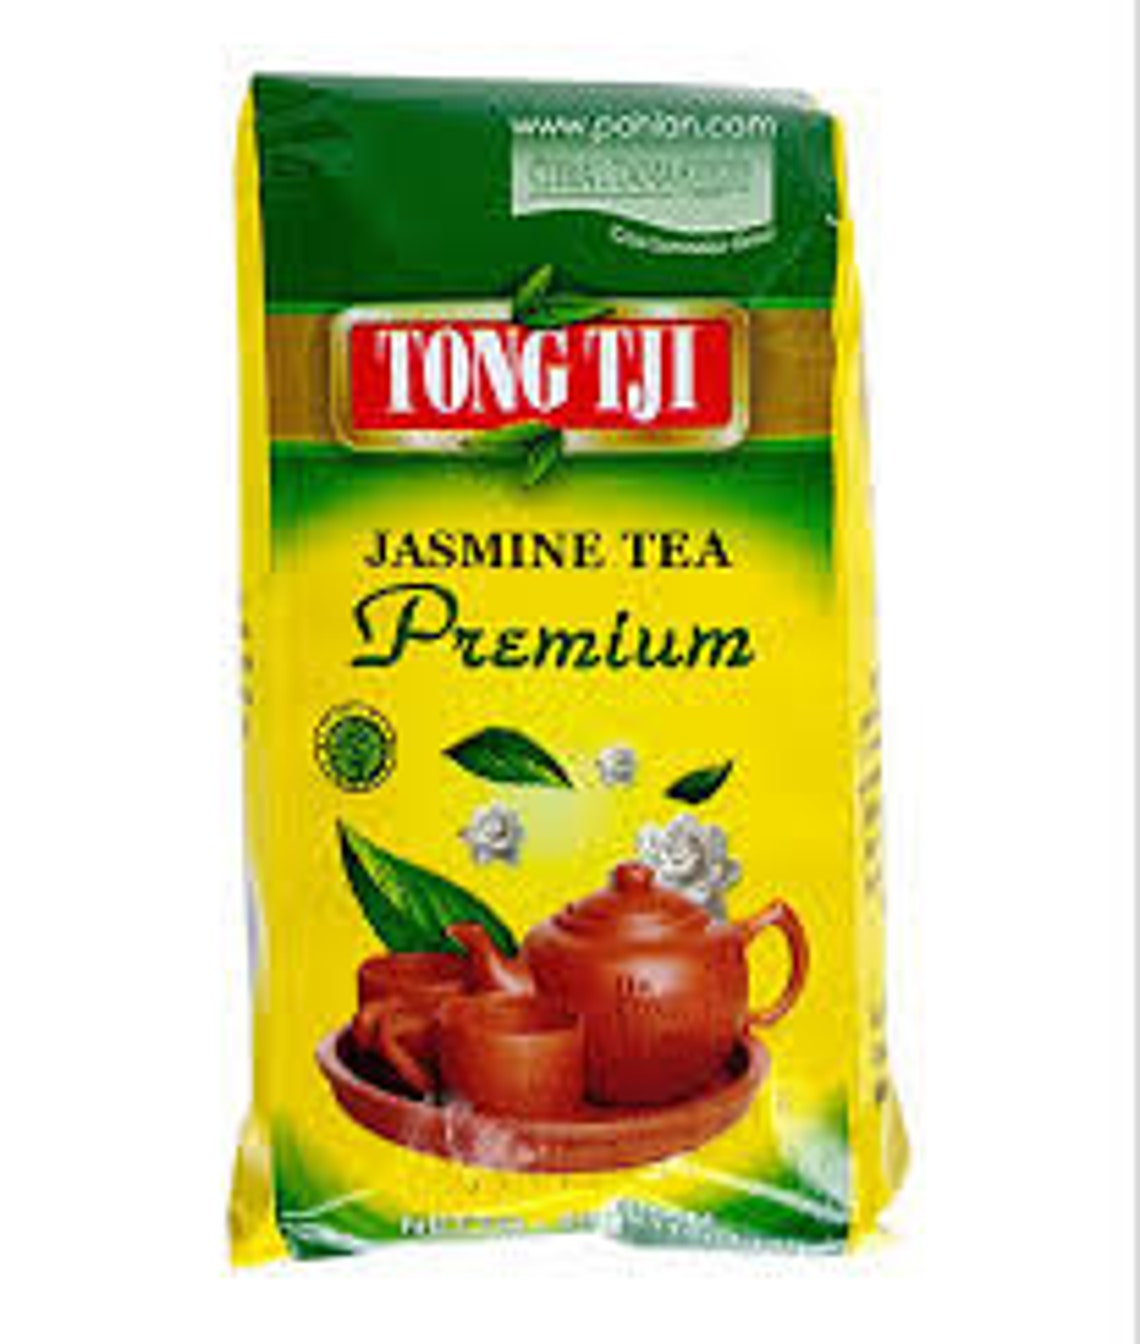 Tong Tji Premium Jasmine Tea 50 Gram Indonesia | Etsy